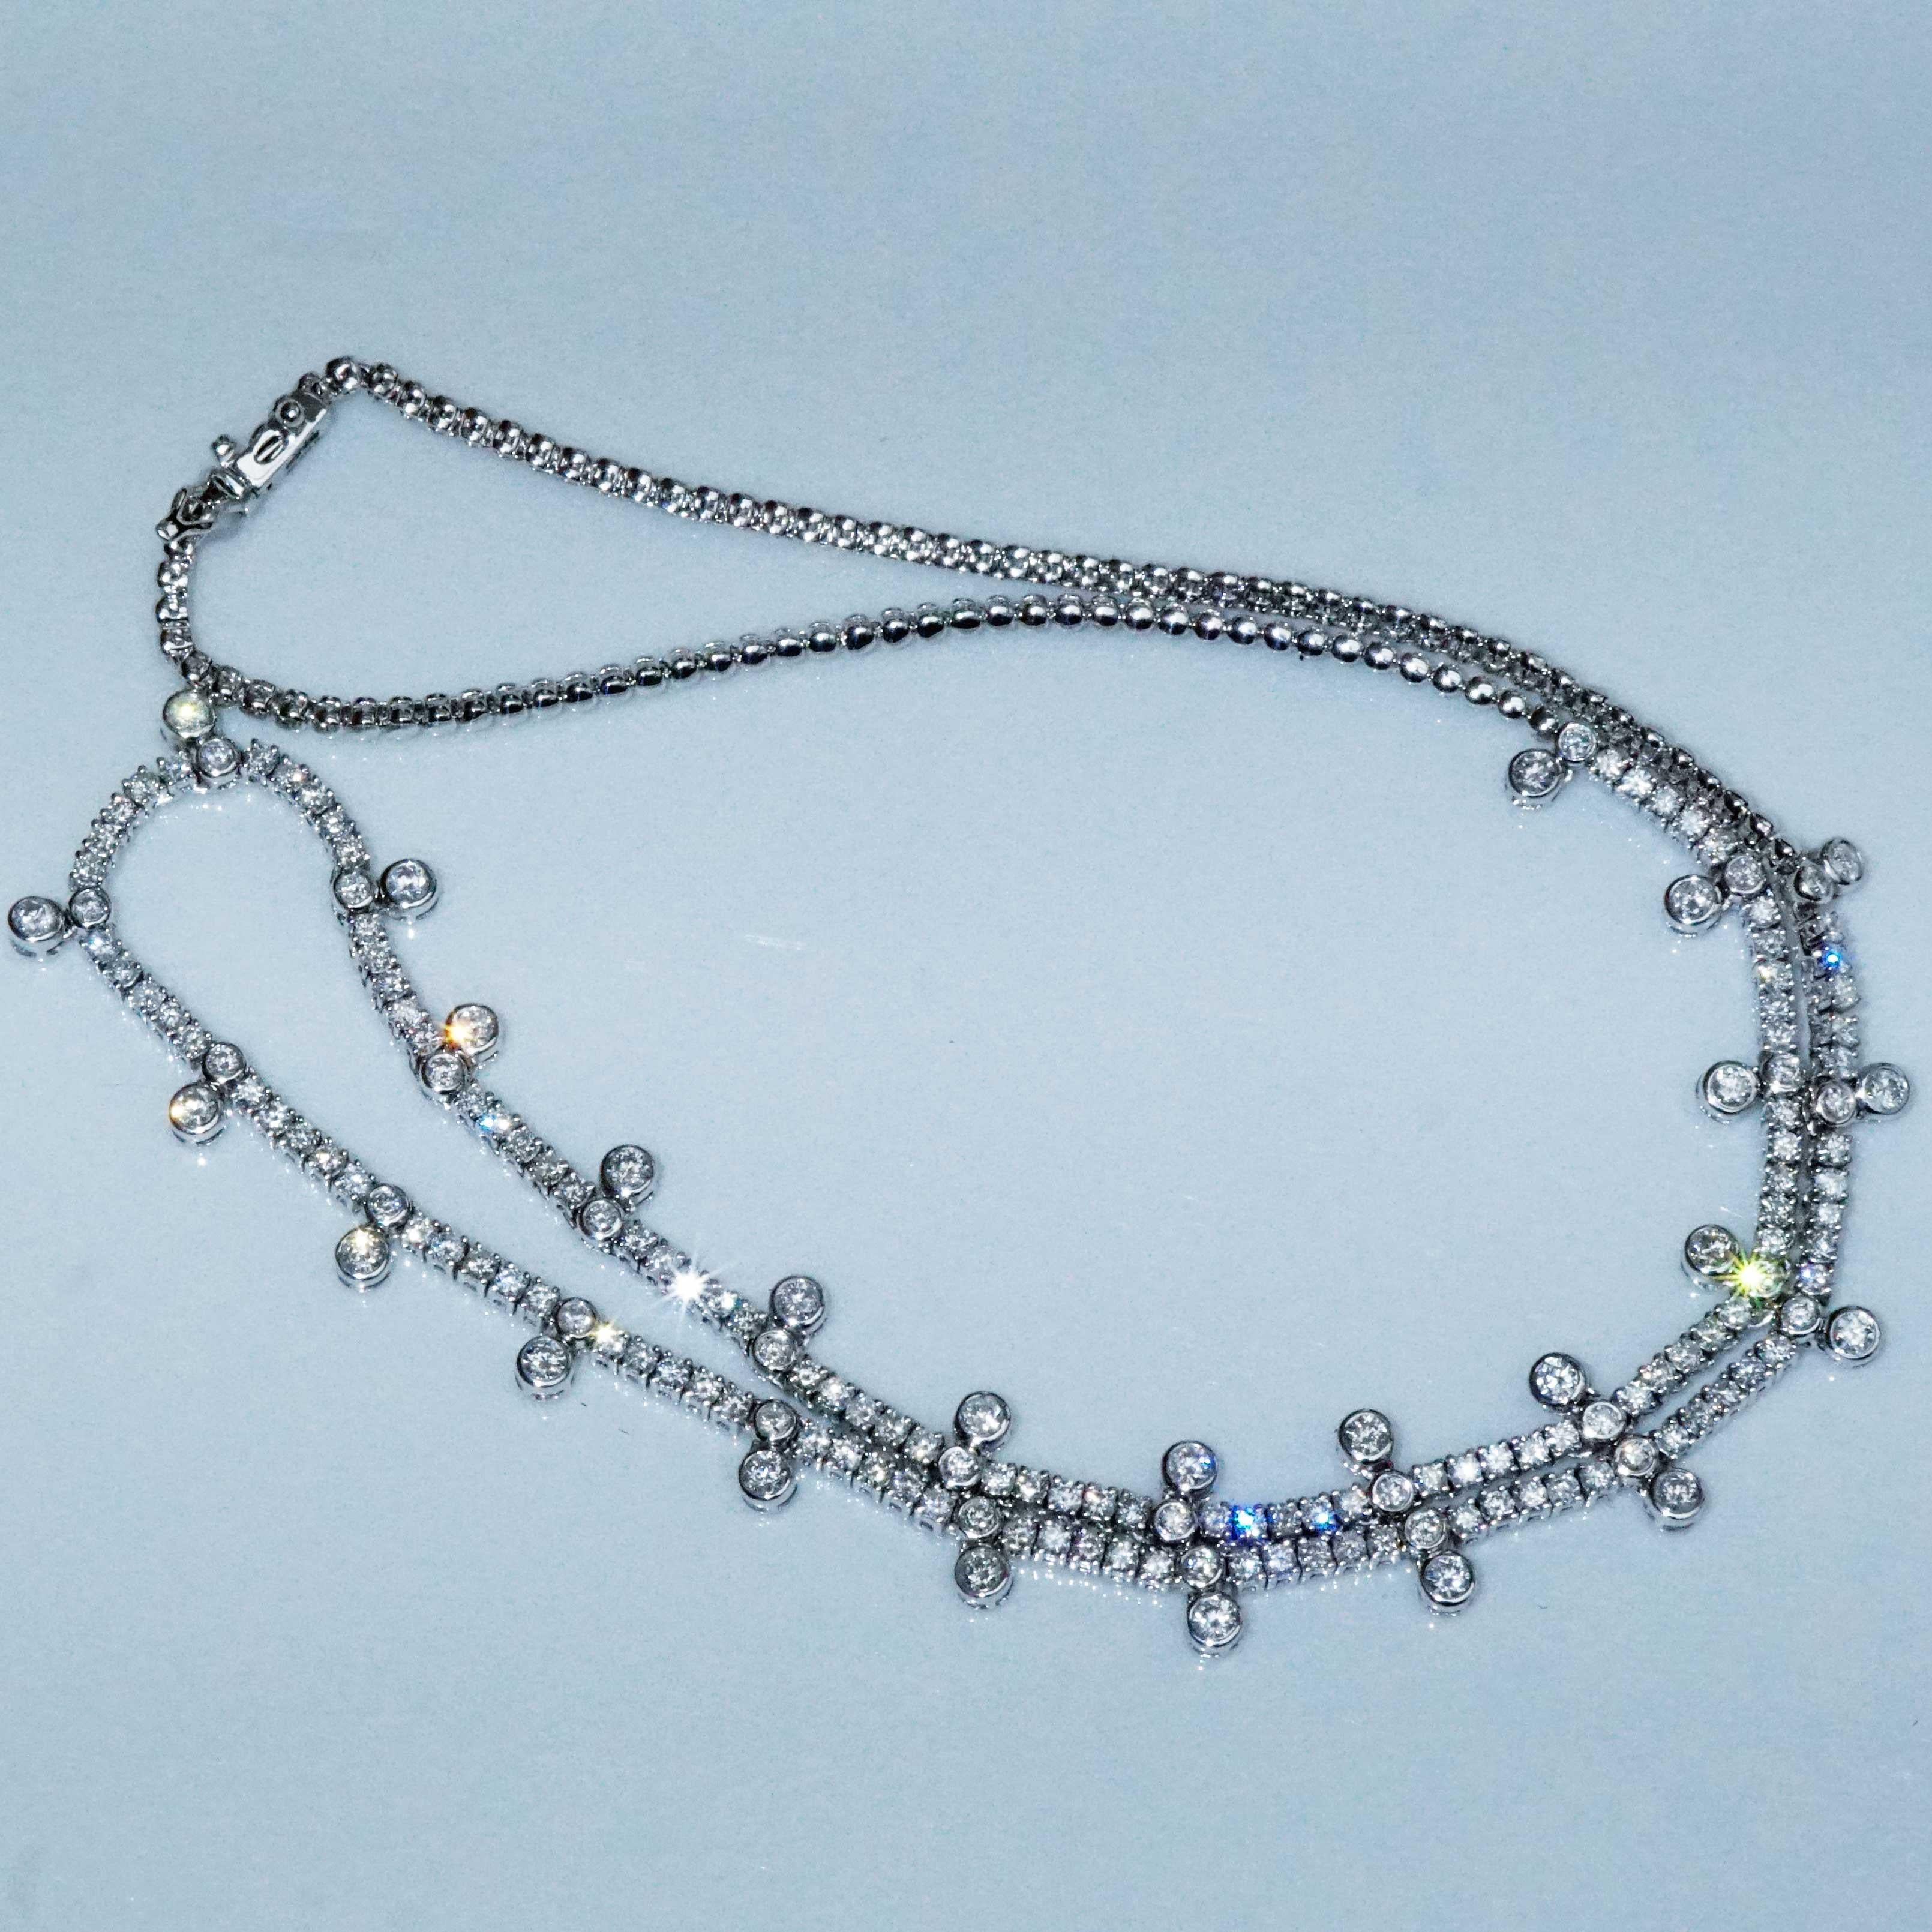 ...princesse bijoux..... collier à brillants mobiles composé de 170 diamants taille brillant totalisant env. 3,45 ct, TW-W (fine white-white) / SI1-P (très petites inclusions claires), élégant motif de pendentifs ronds avec des maillons de collier